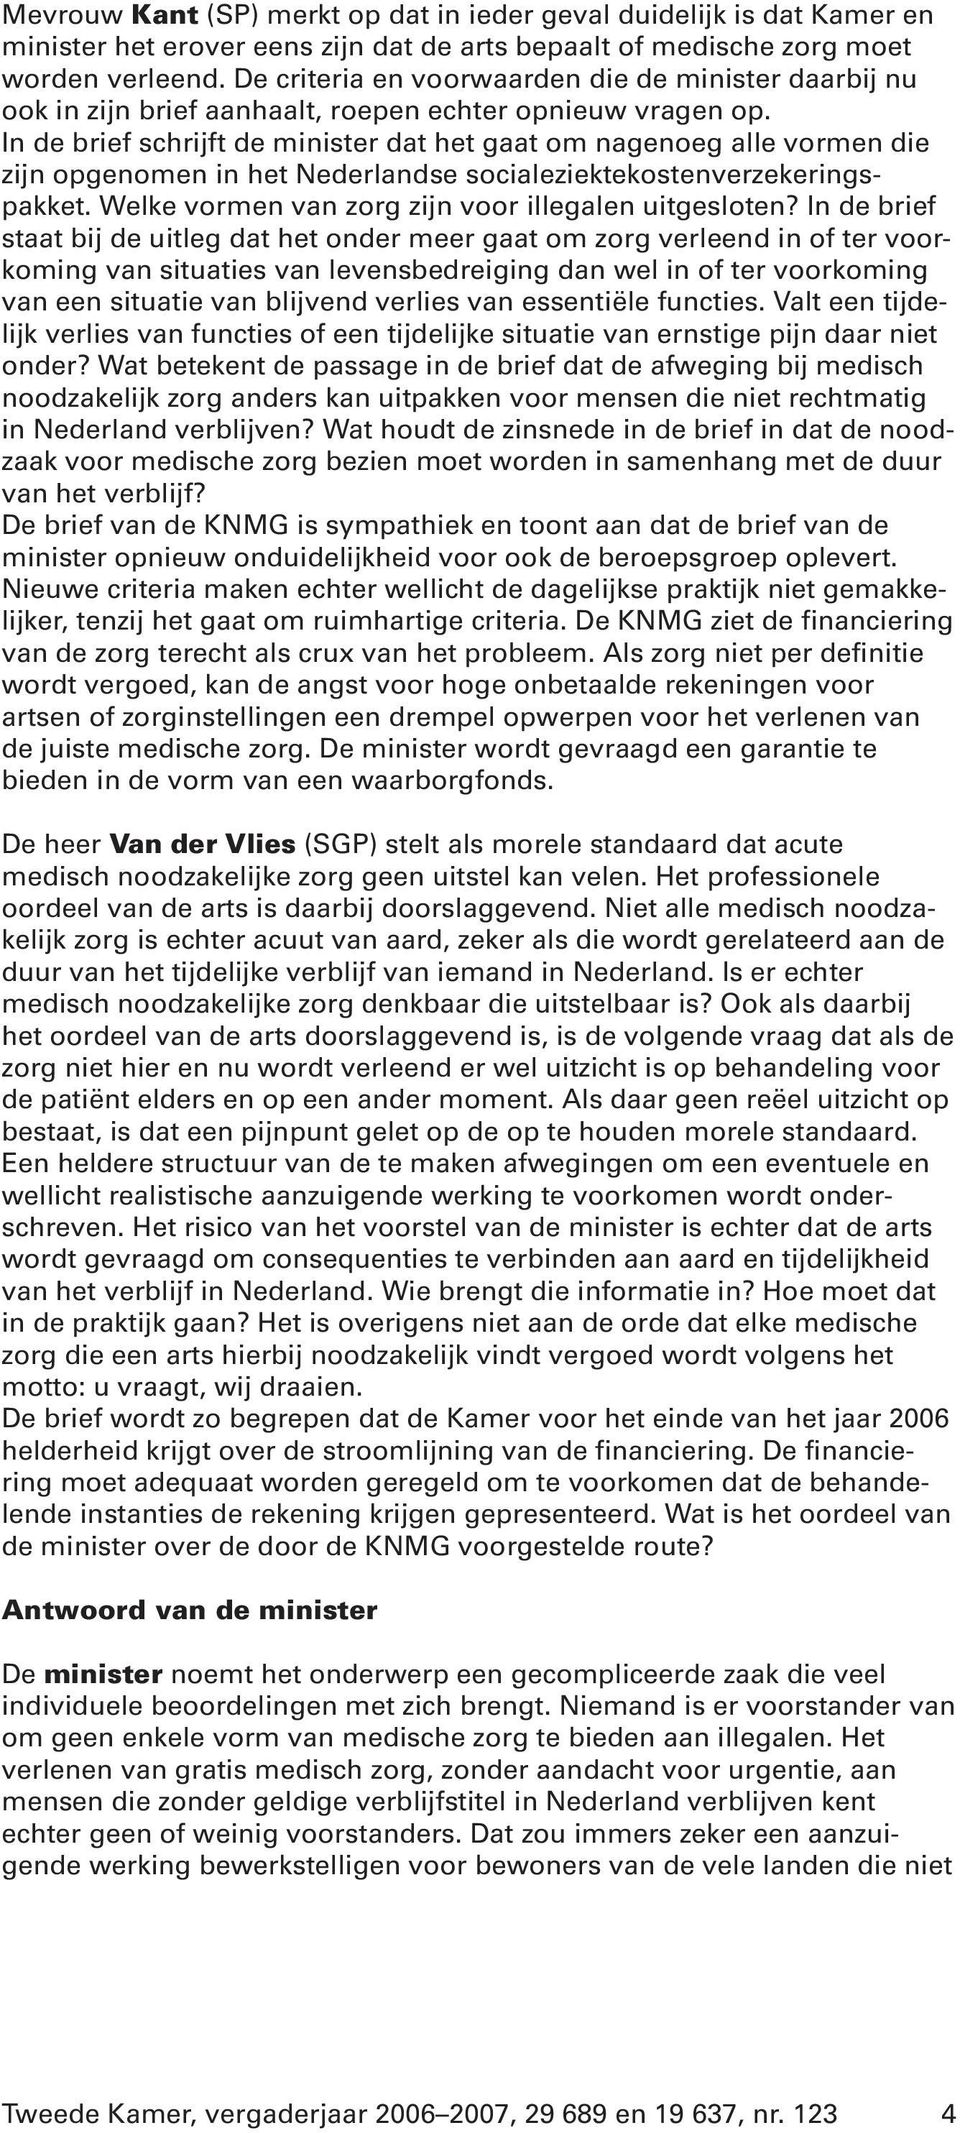 In de brief schrijft de minister dat het gaat om nagenoeg alle vormen die zijn opgenomen in het Nederlandse socialeziektekostenverzekeringspakket.